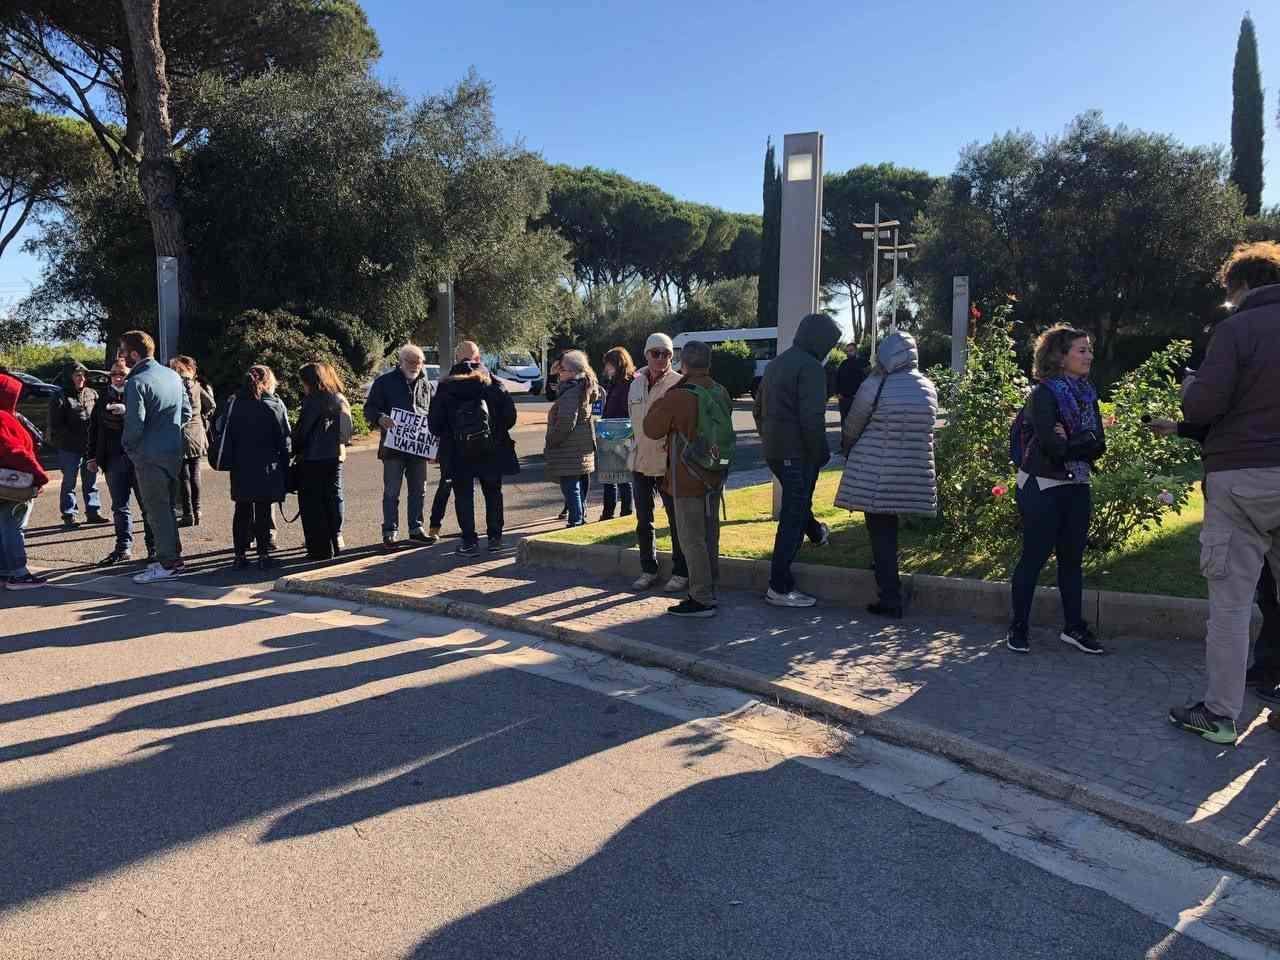 La piccola folla riunita fuori dal Consiglio Regionale del Lazio a sostegno di Barillari